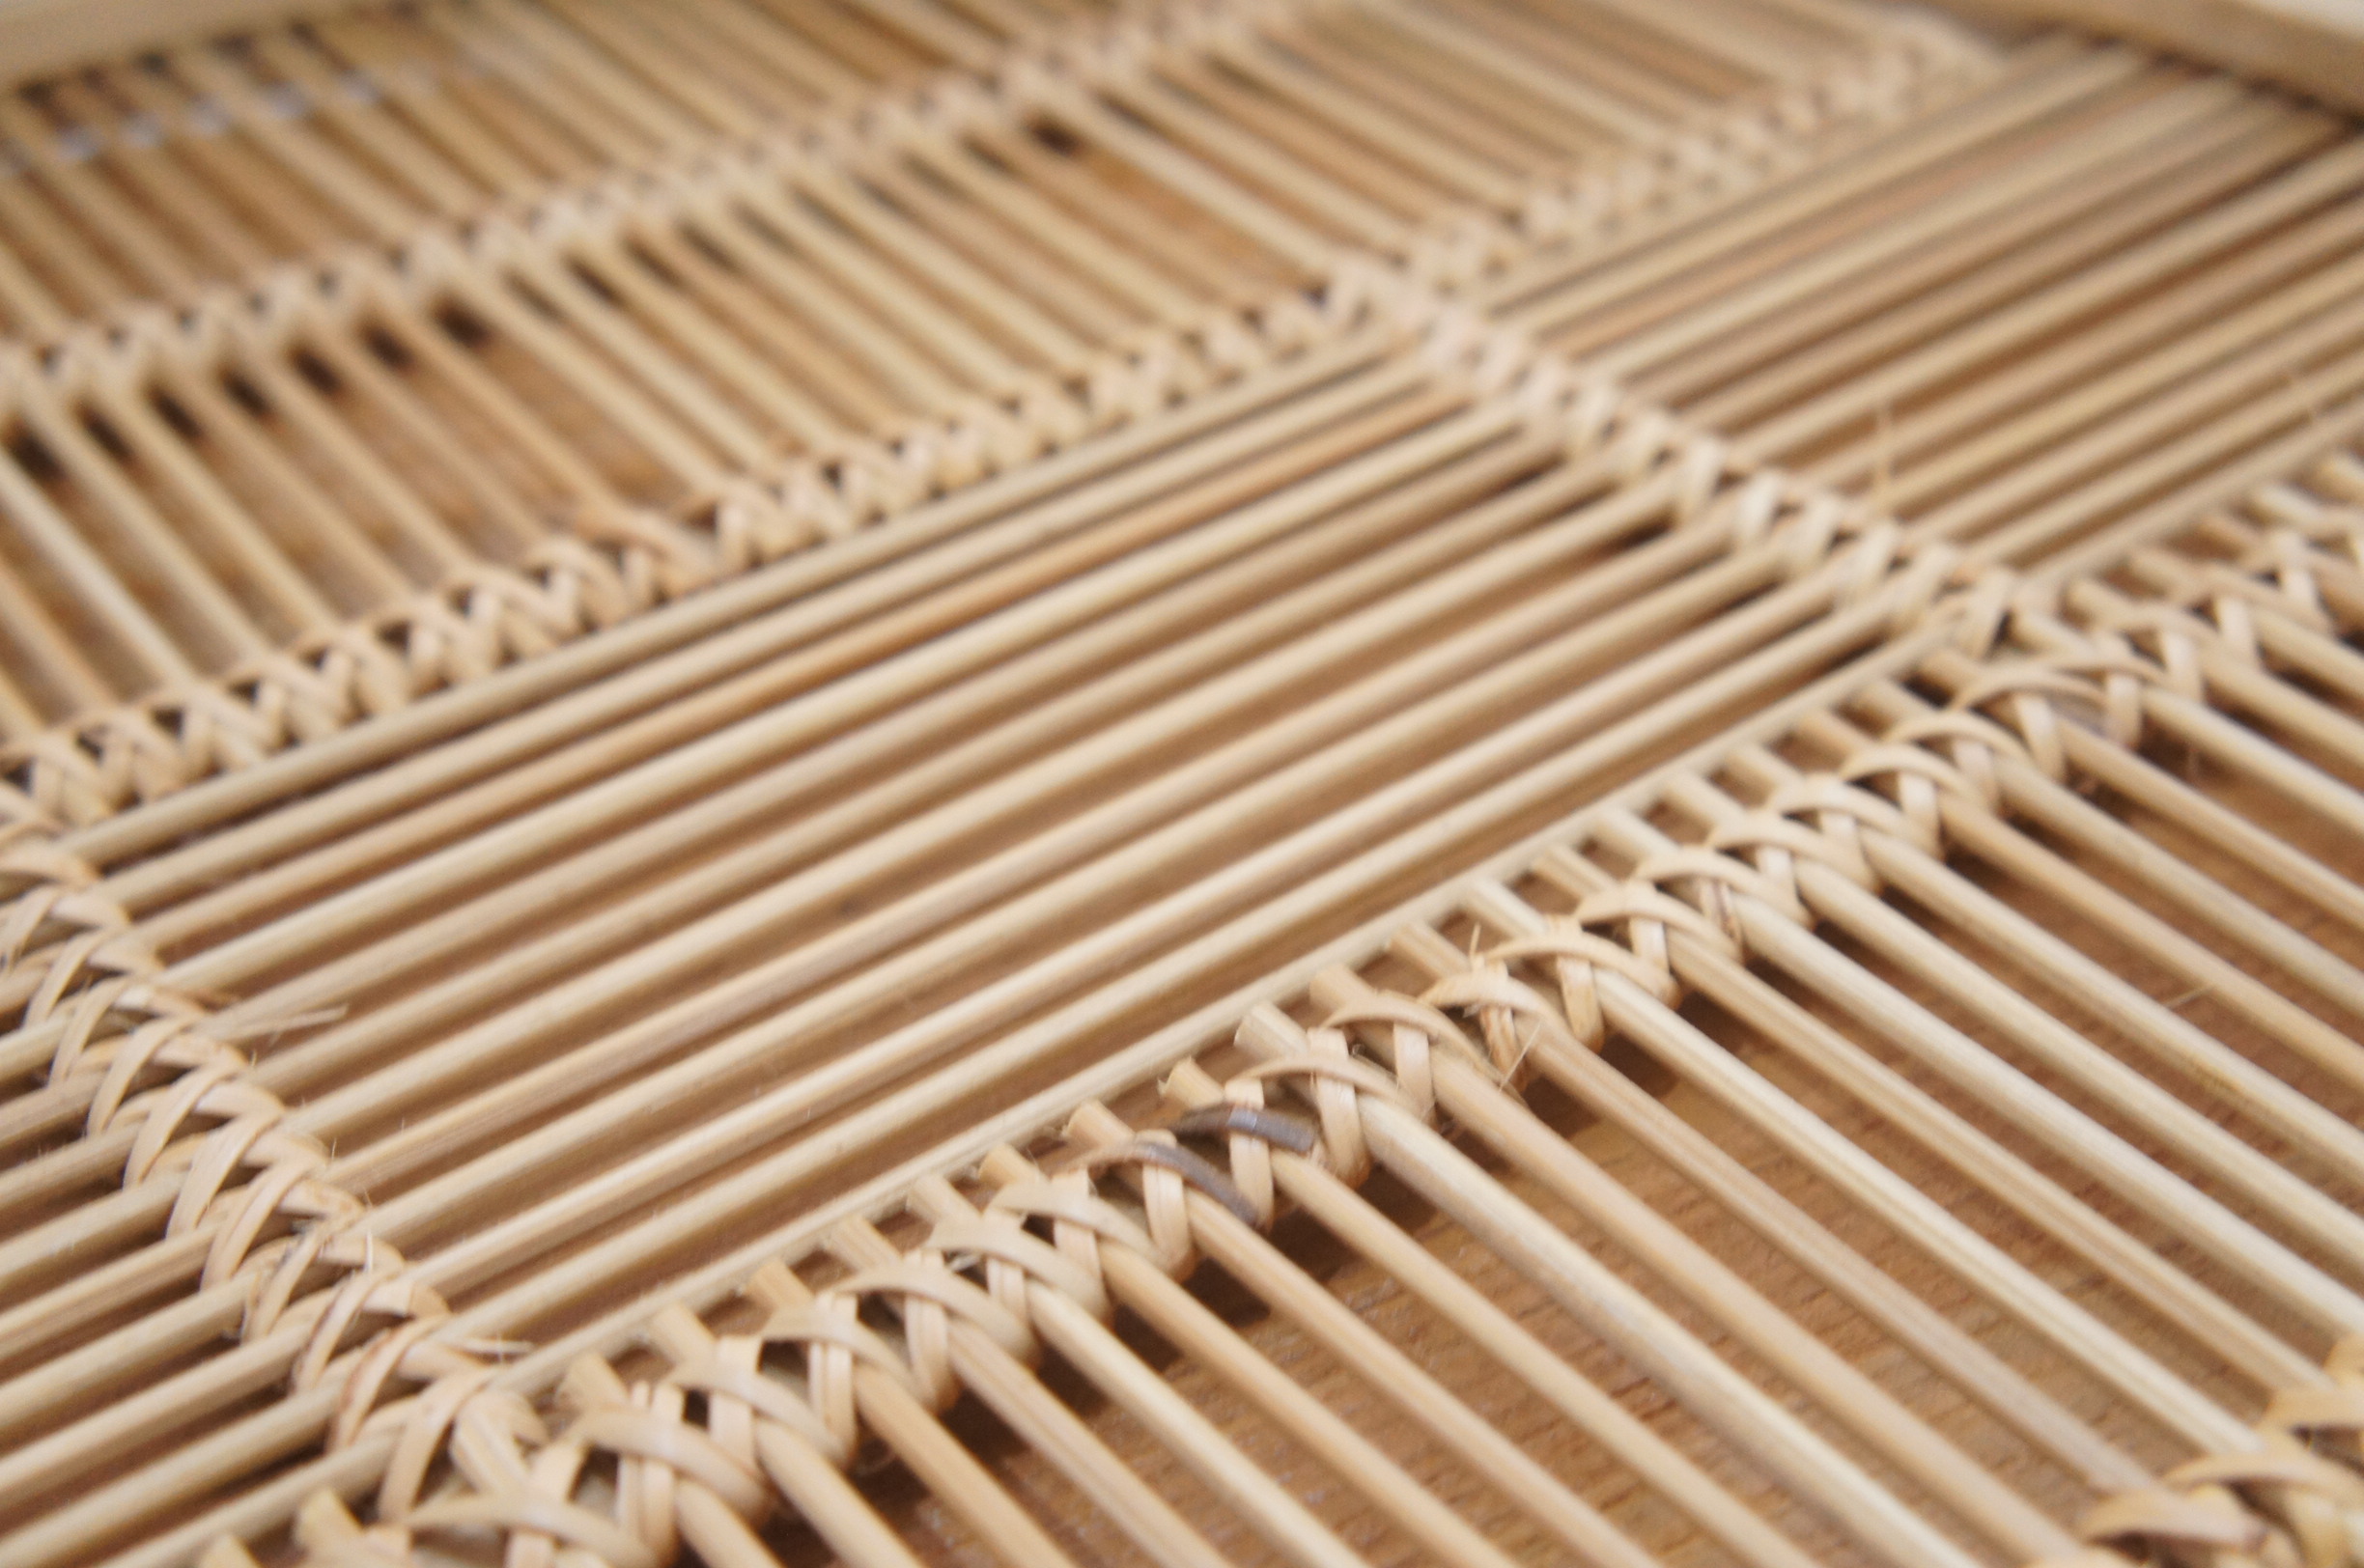 バンブートレイ 丸型トレイ 編み込み 手編み 竹製 竹細工 お盆